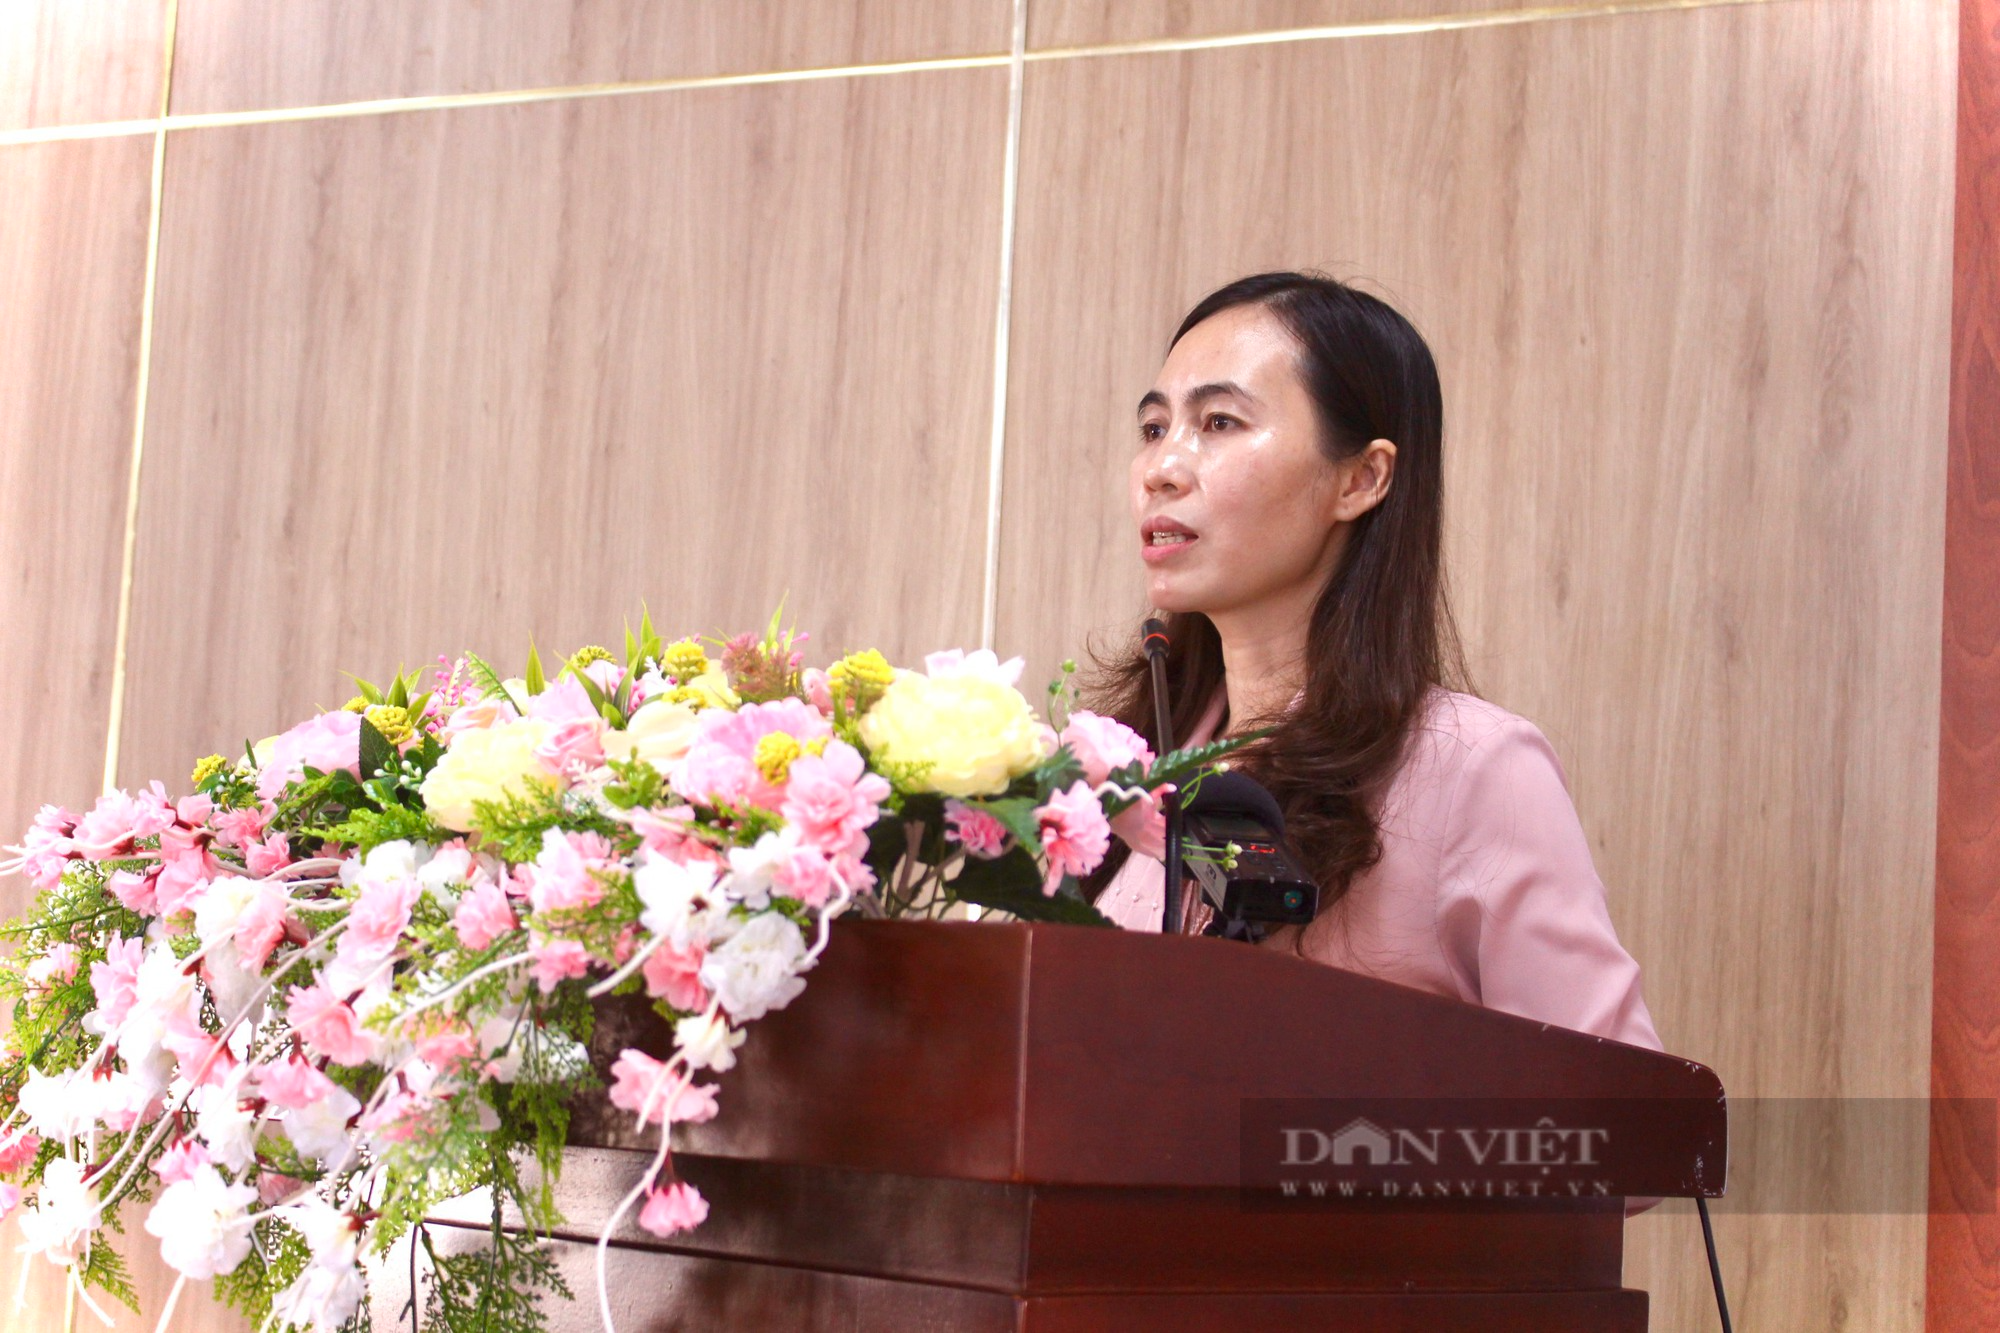 Ra mắt Câu lạc bộ "Nông dân sản xuất, kinh doanh giỏi" đầu tiên của tỉnh Đắk Lắk - Ảnh 2.